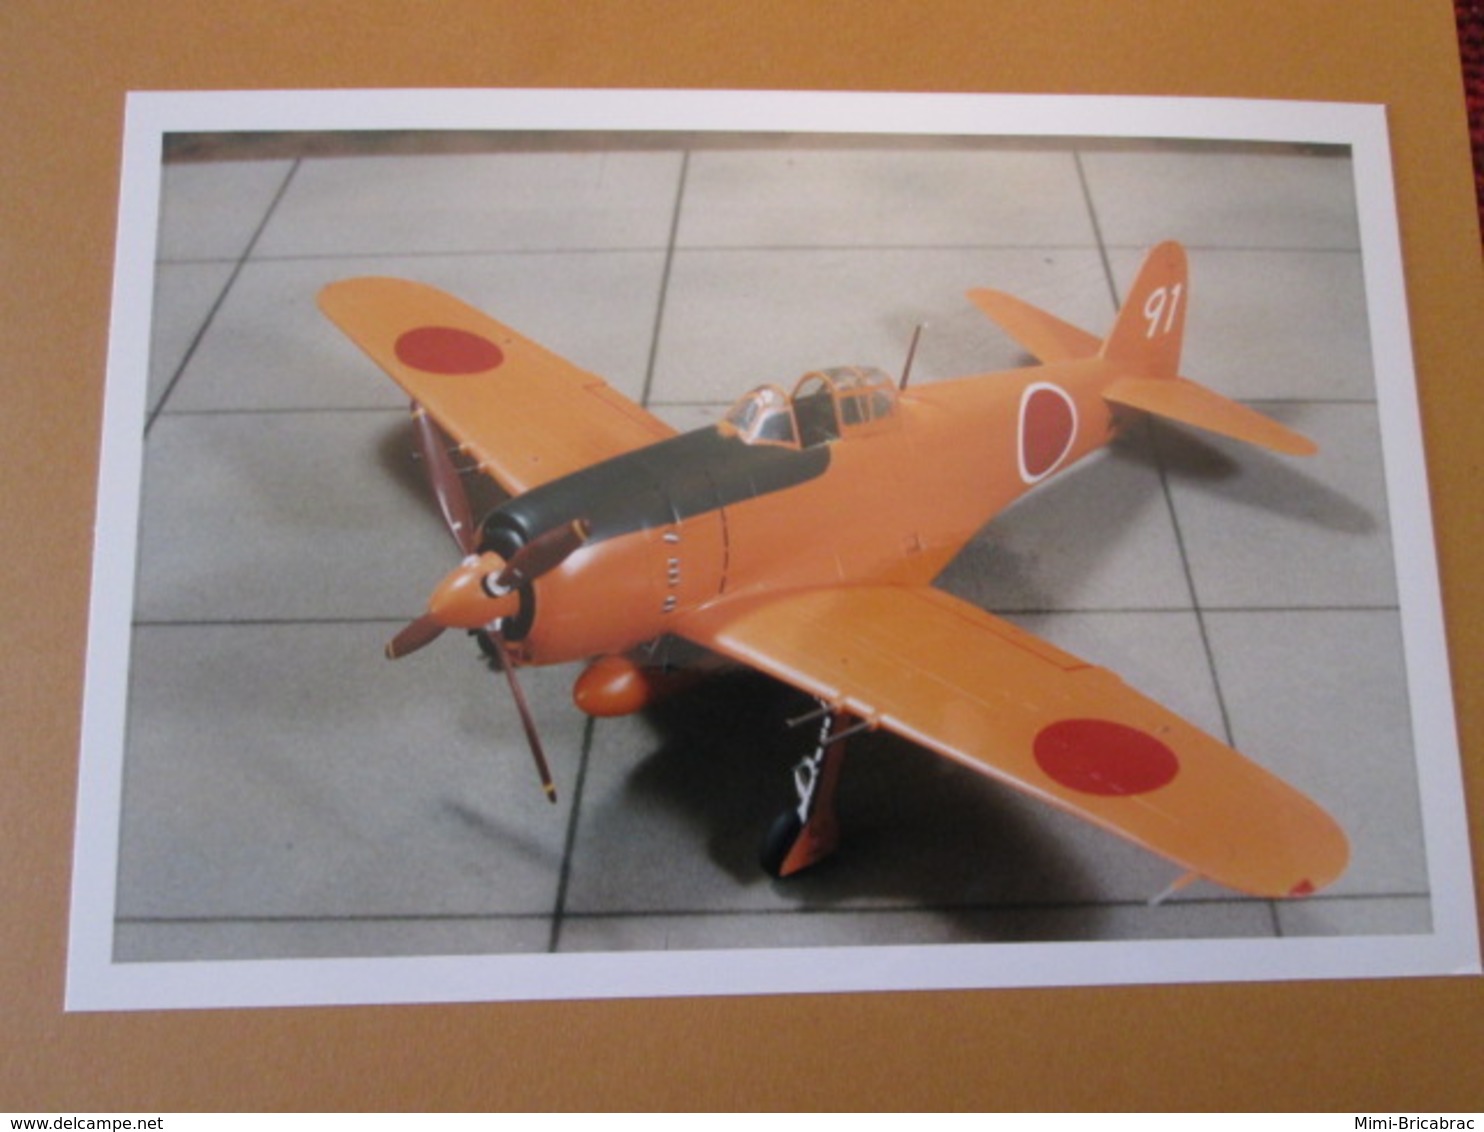 CAGI3 Format Carte Postale Env 15x10cm : SUPERBE (TIRAGE UNIQUE) PHOTO MAQUETTE PLASTIQUE 1/48 AVION JAPONAIS PROTOTYPE - Vliegtuigen